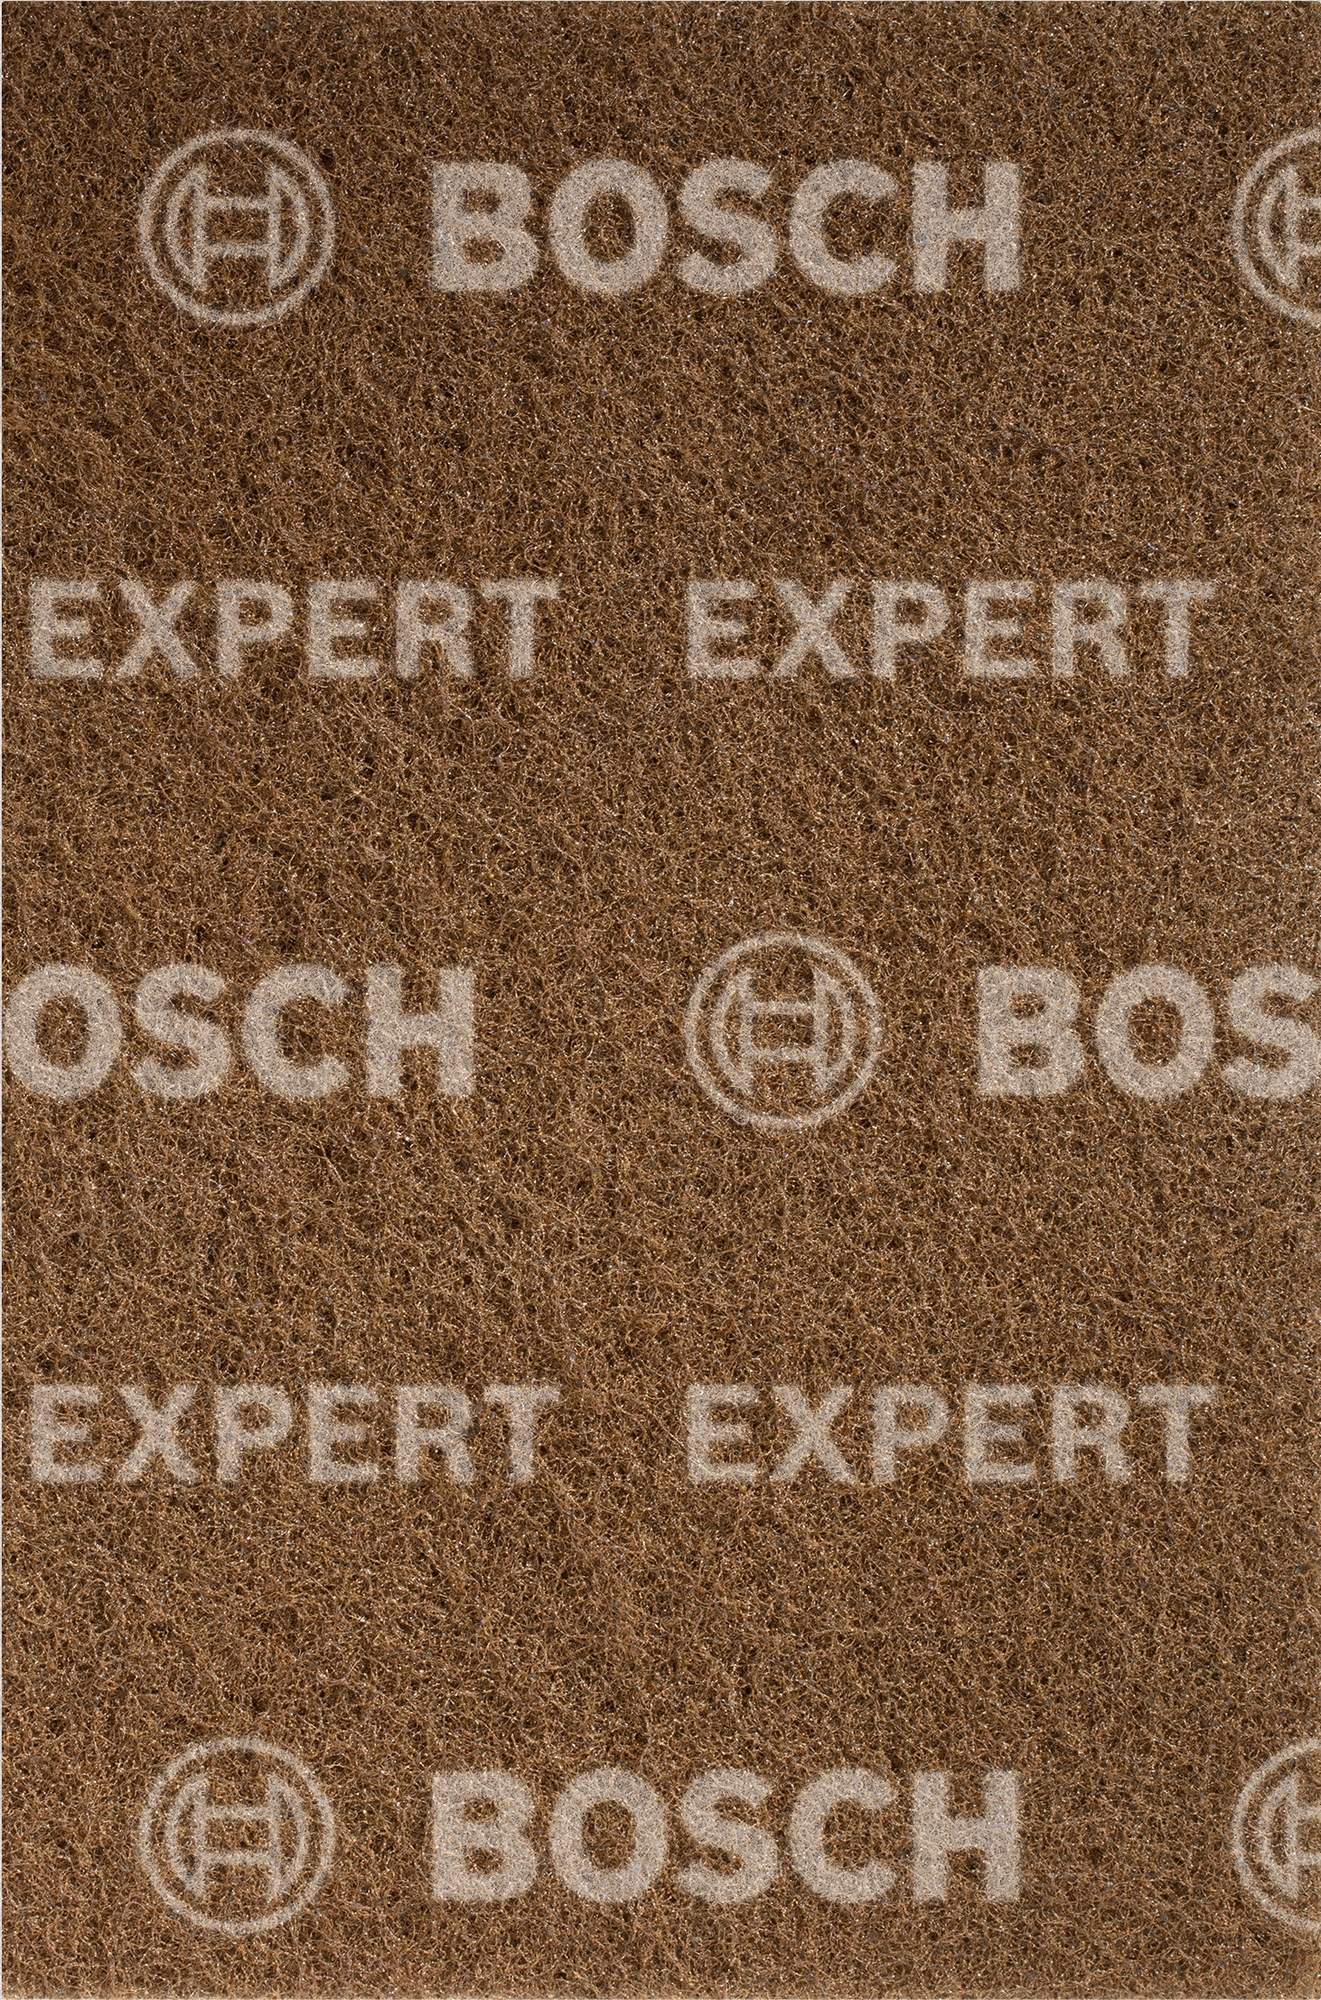 Rouno Bosch Expert N880 152×229 mm hrubá